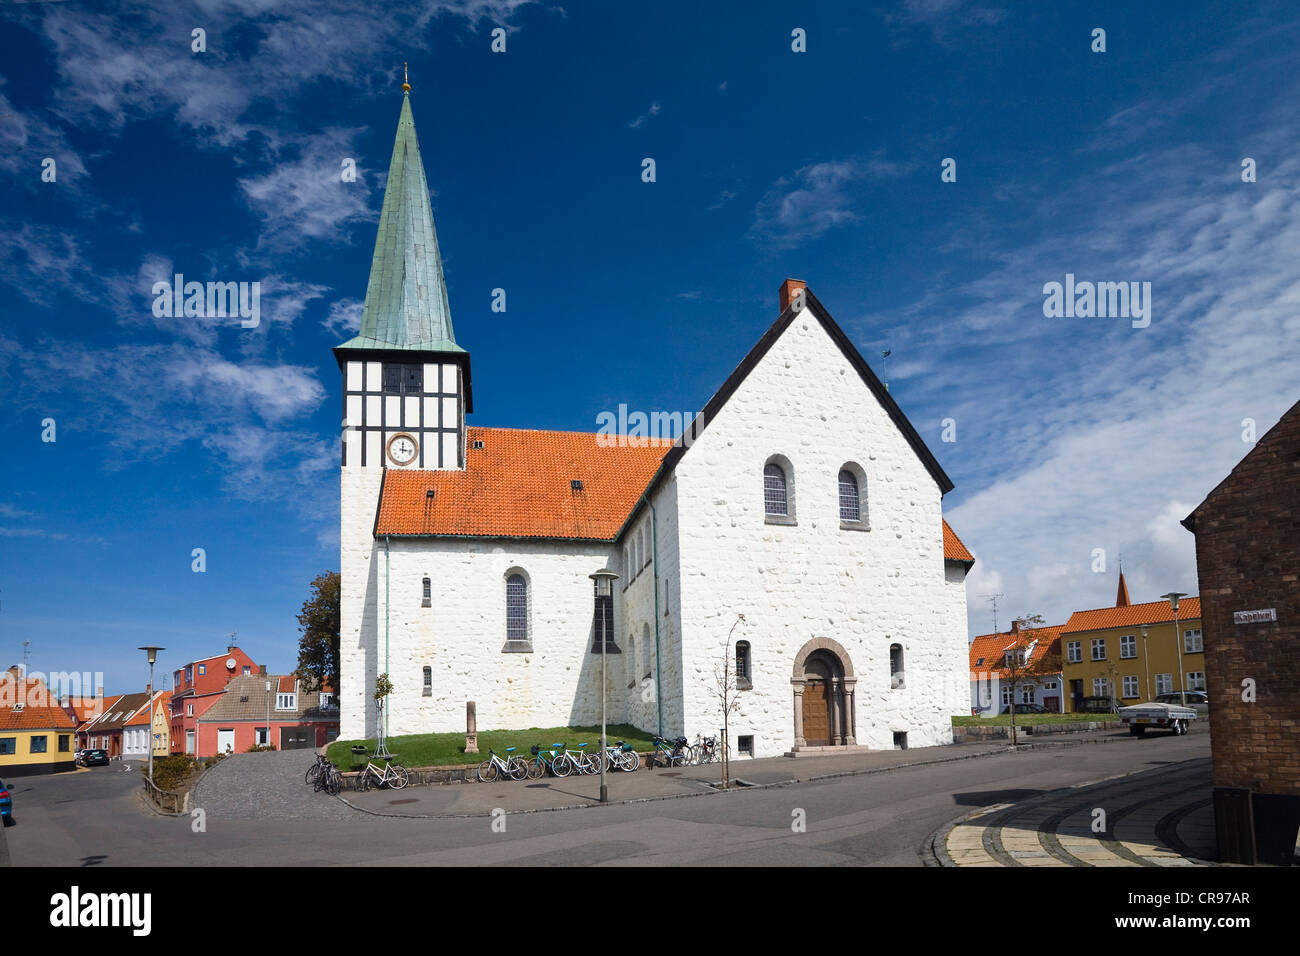 Skt. Dans l'Eglise Kirke Nicolaj Rønne, Bornholm, Danemark, Europe Banque D'Images